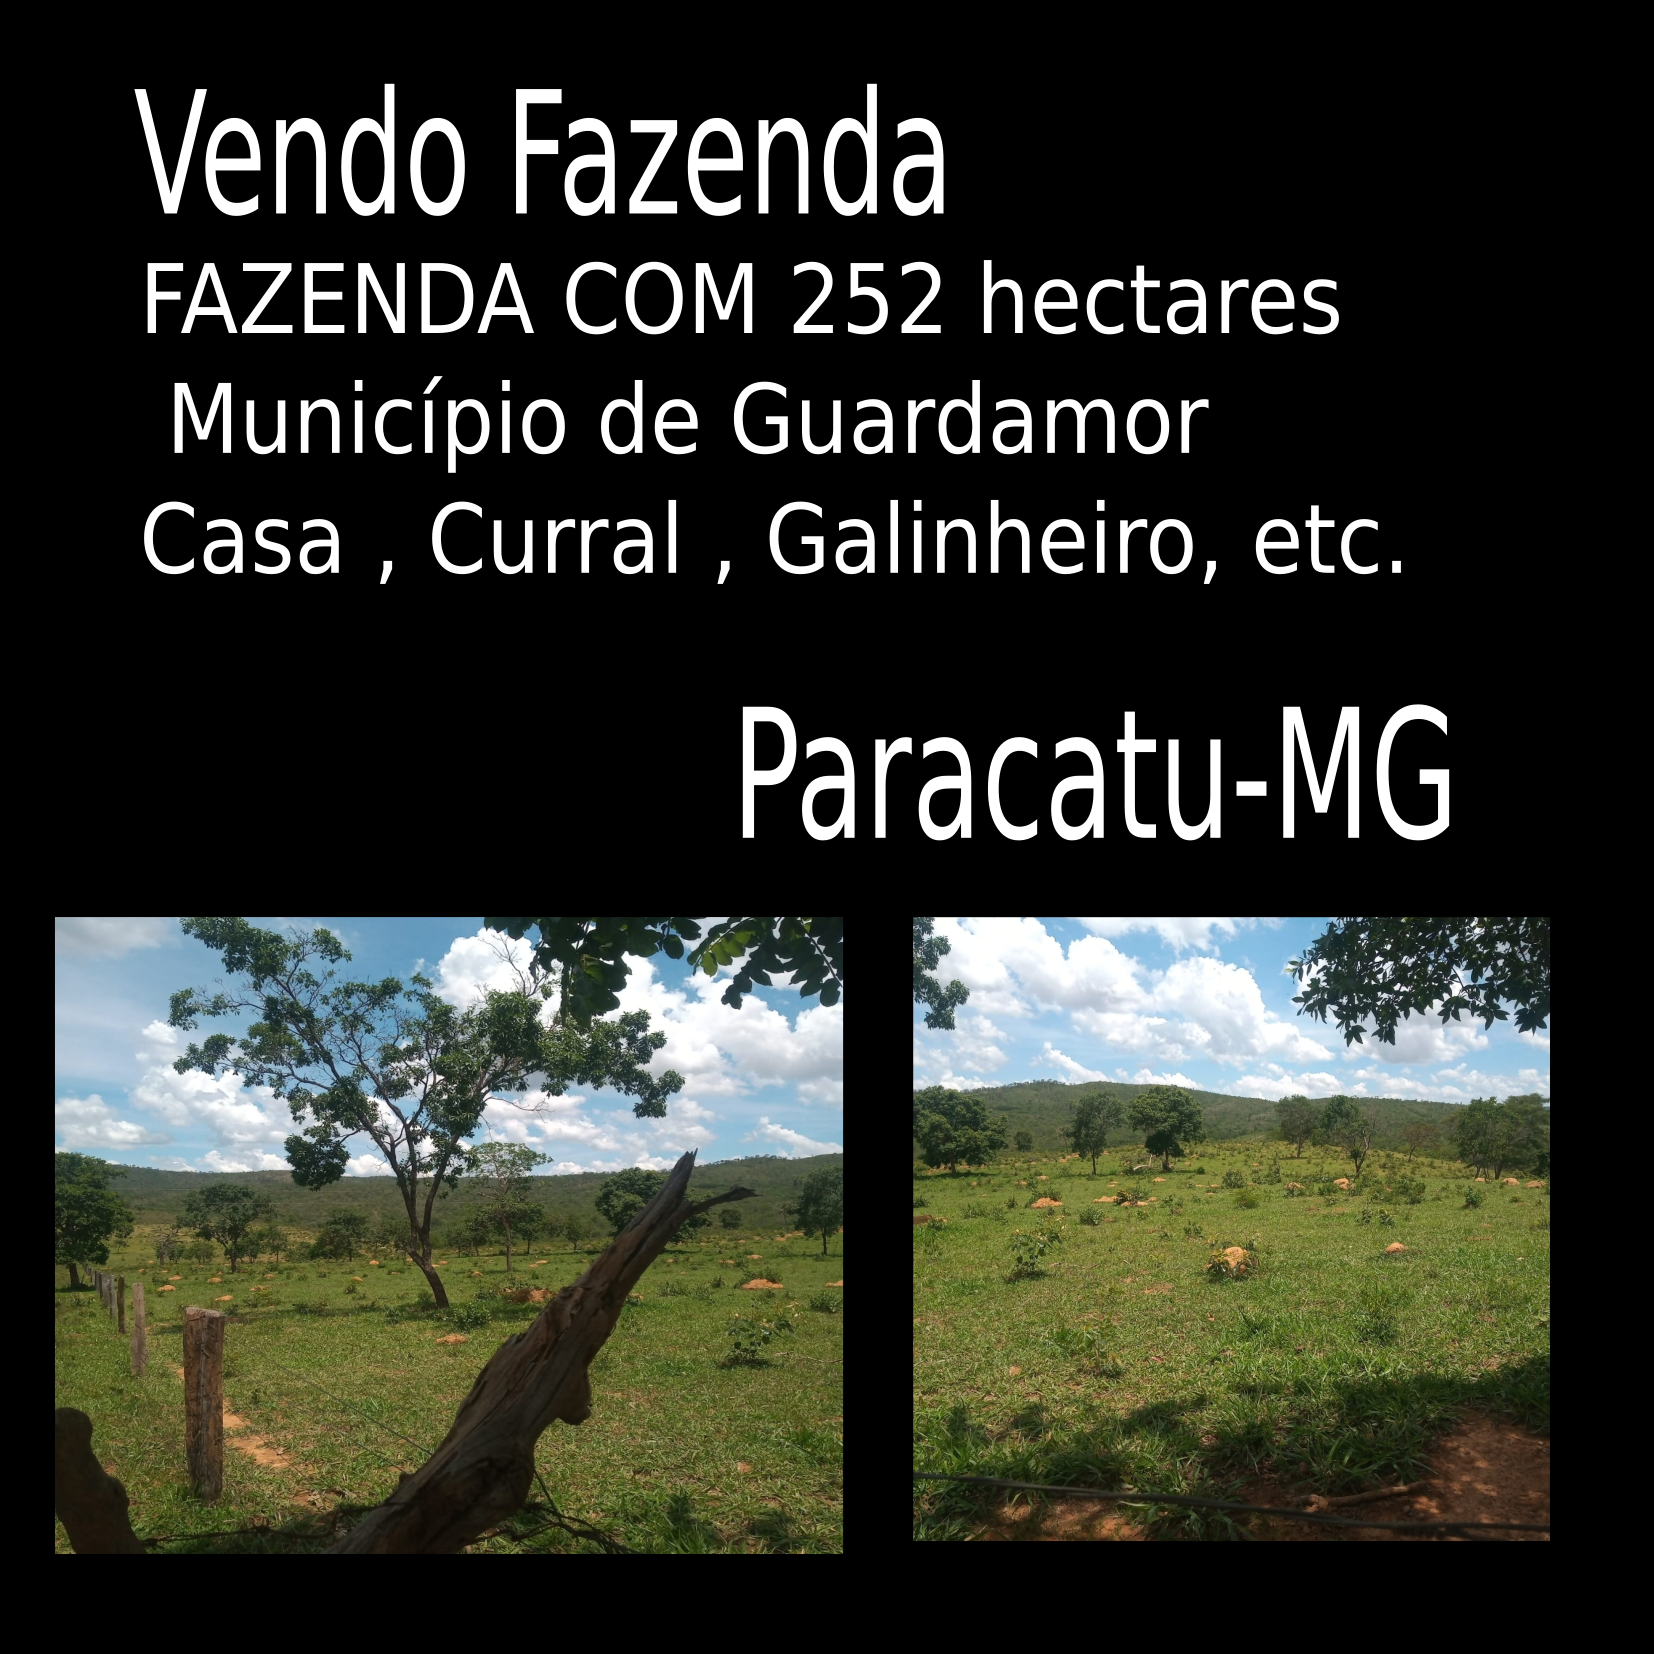 Vendo Fazenda de 252 Hectares Paracatu-MG 01